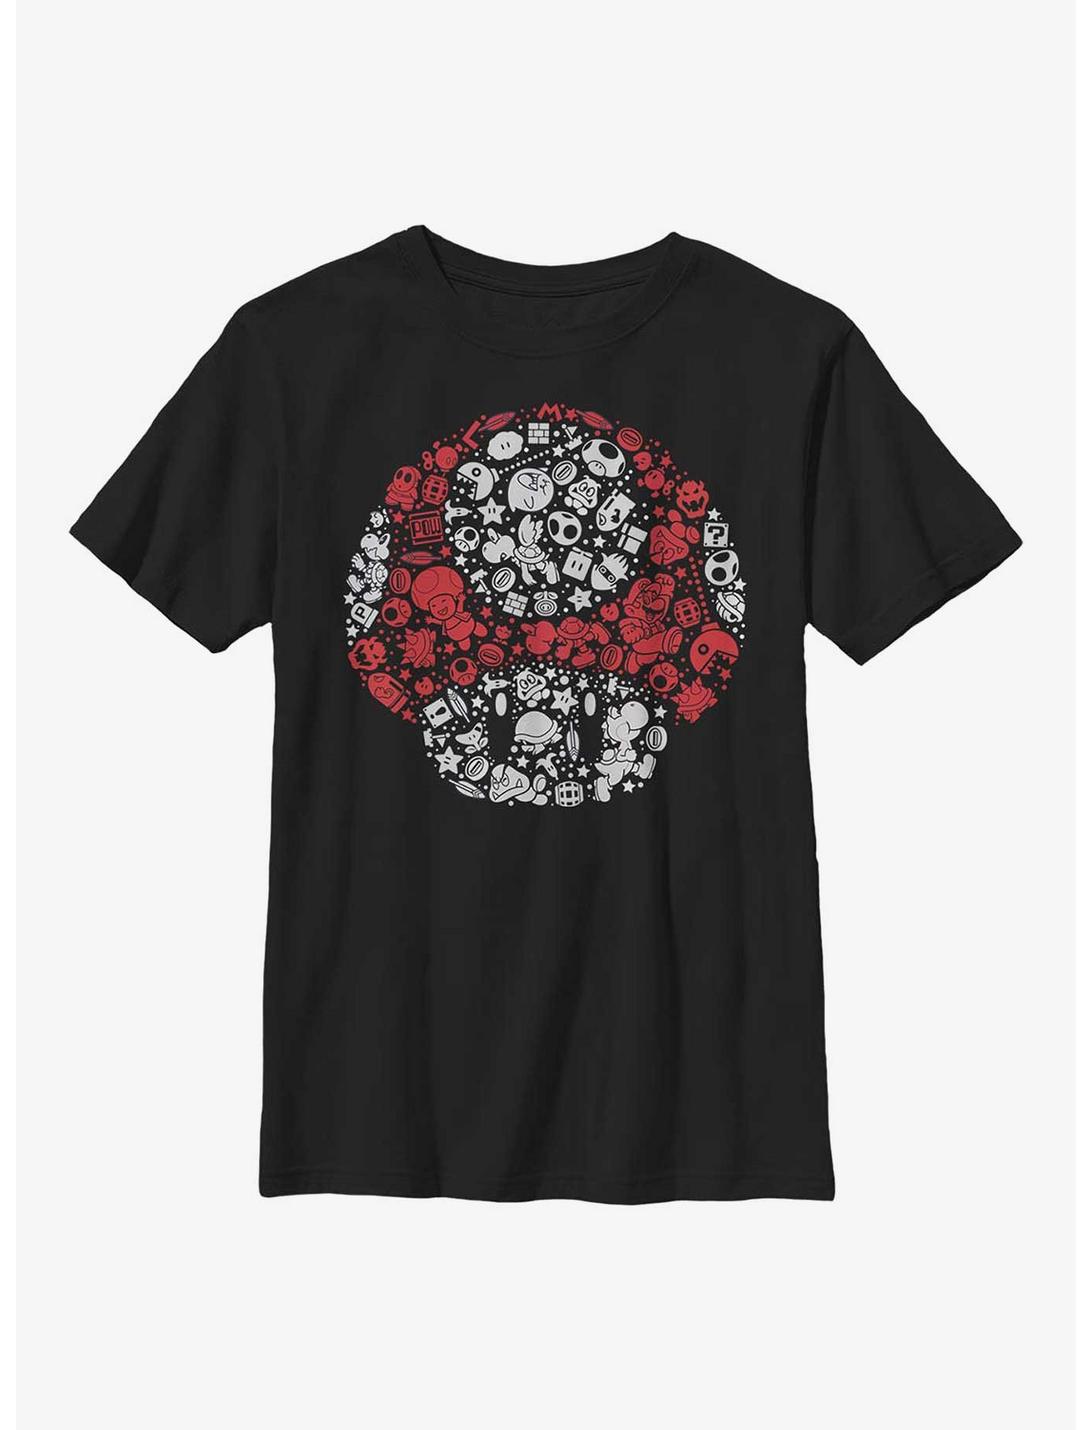 Nintendo Mario Red Mushroom Icons Youth T-Shirt, BLACK, hi-res